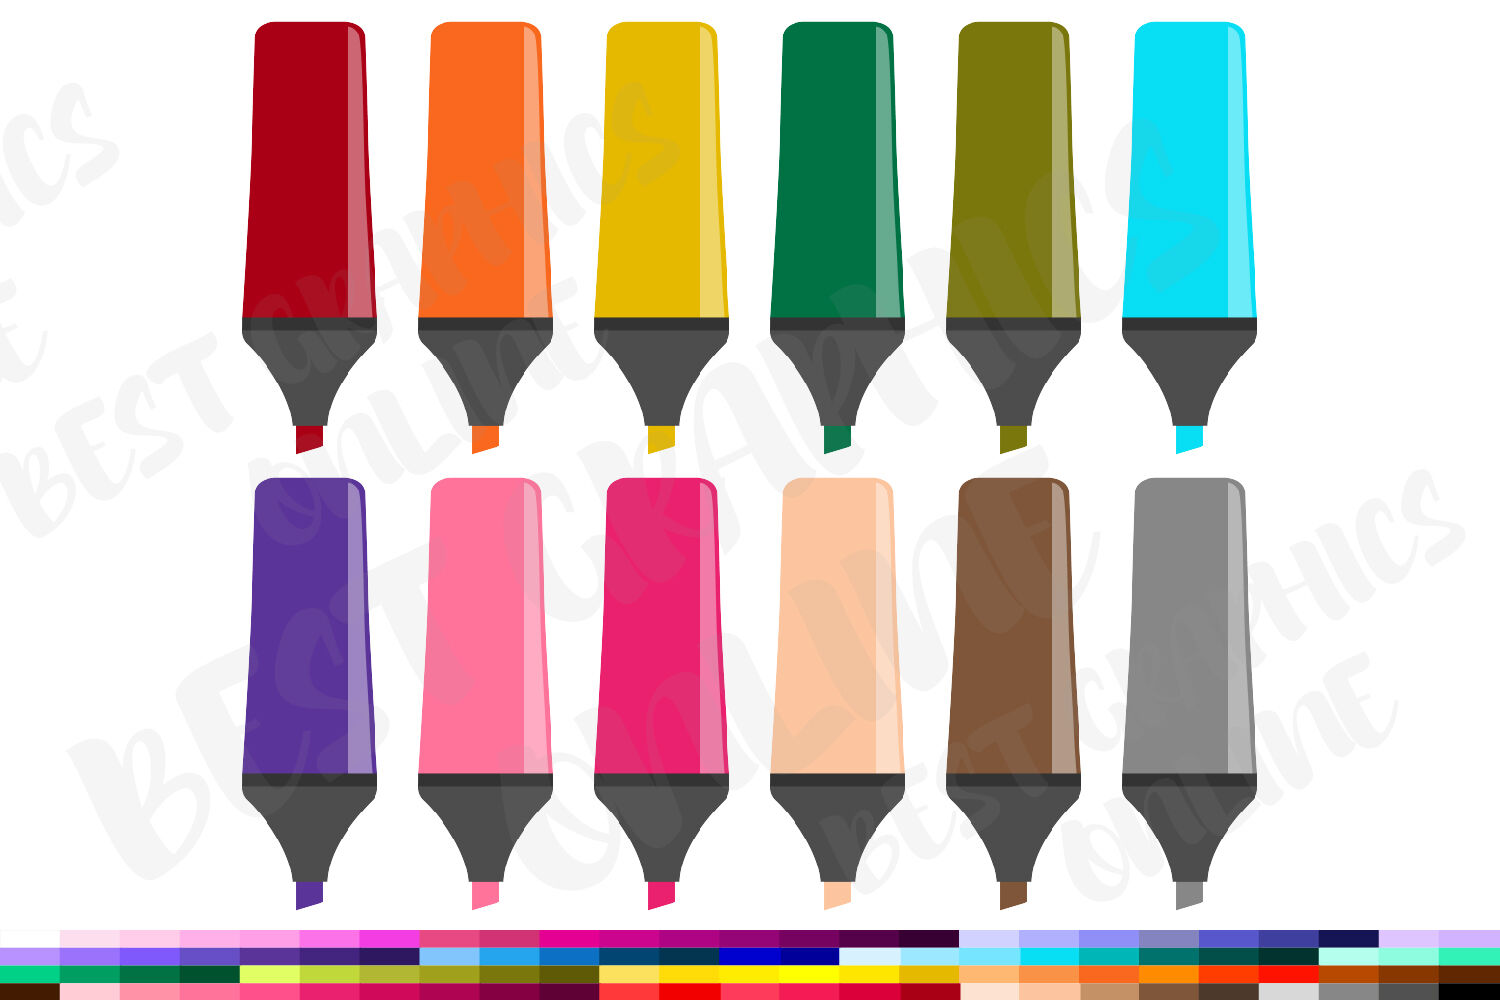 Colored Pencils Clip Art - 100 Clip Art Graphics